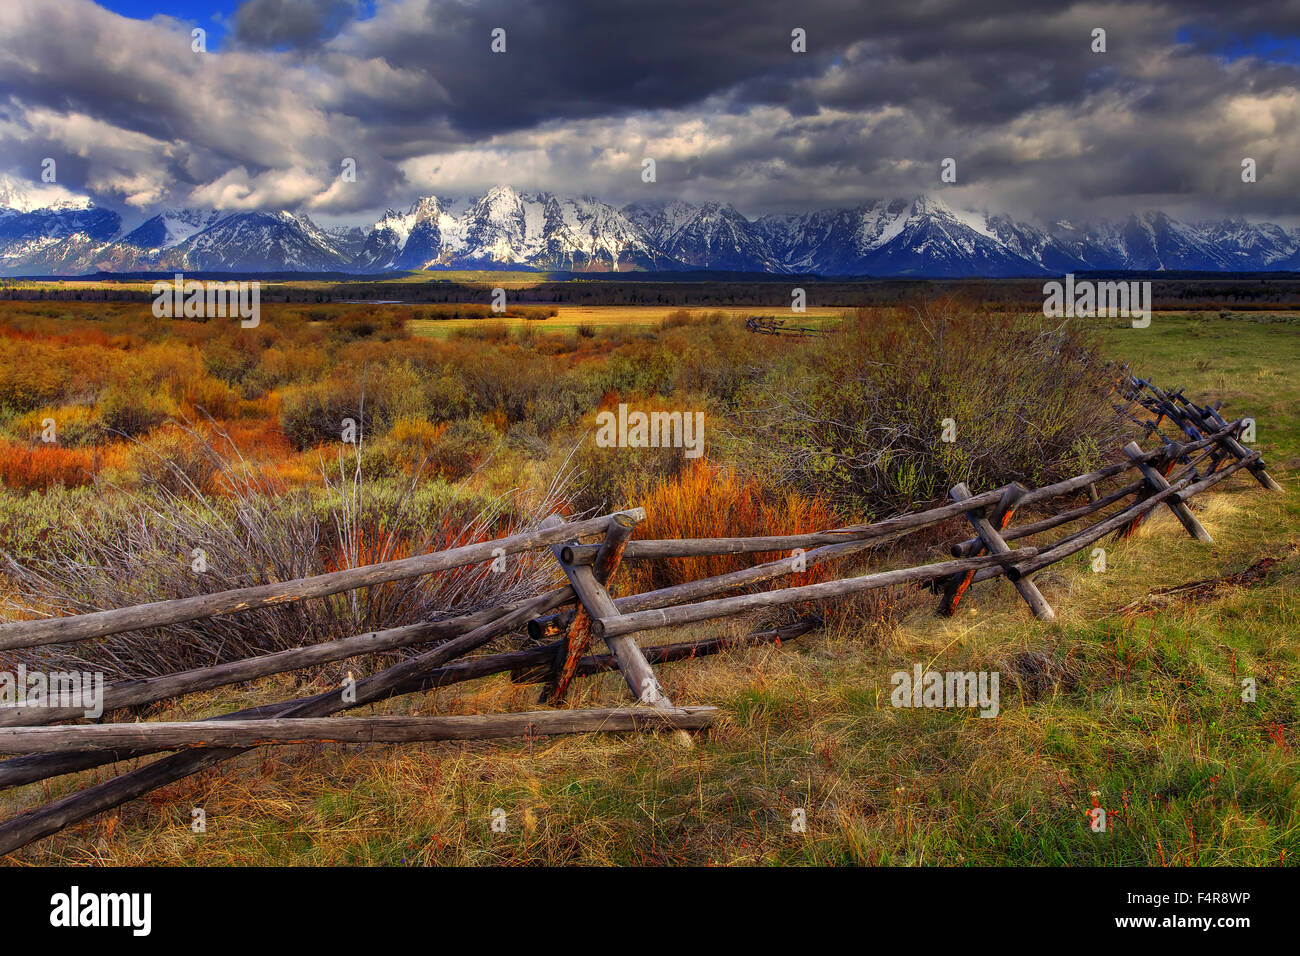 USA, United States, America, Wyoming, Grand Teton, Rockies, Rocky Mountains, National Park, Jackson Hole, Mount Moran, Oxbow Ben Stock Photo